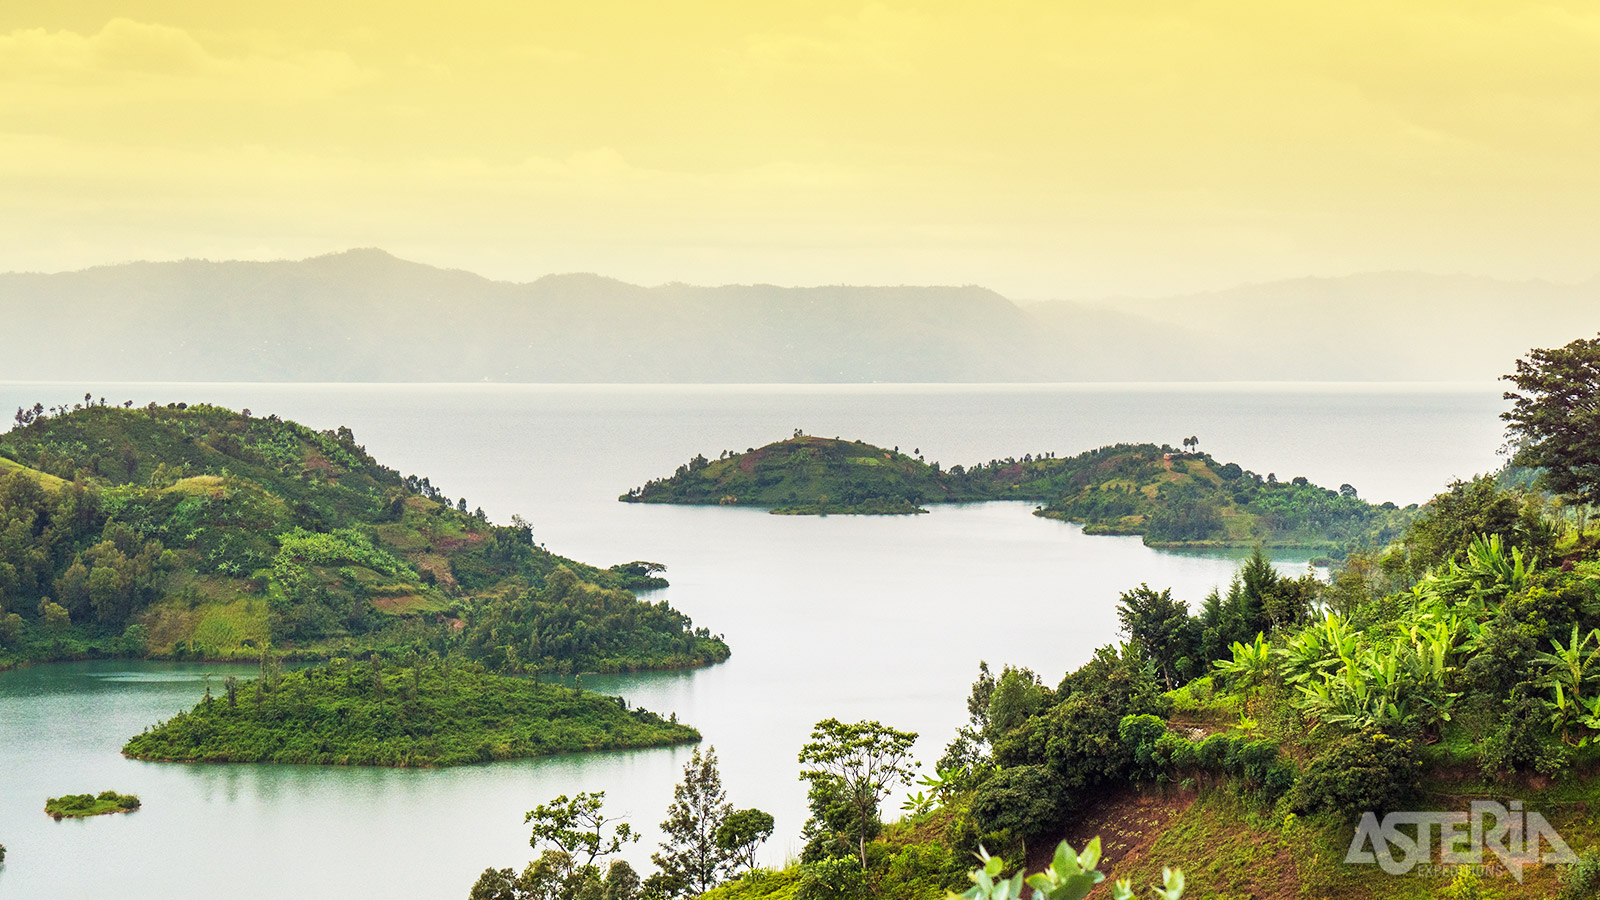 Lake Kivu is niet alleen het grootste zoetwatermeer van het Rwanda, maar markeert ook de natuurlijke grens met buurland D.R. Congo